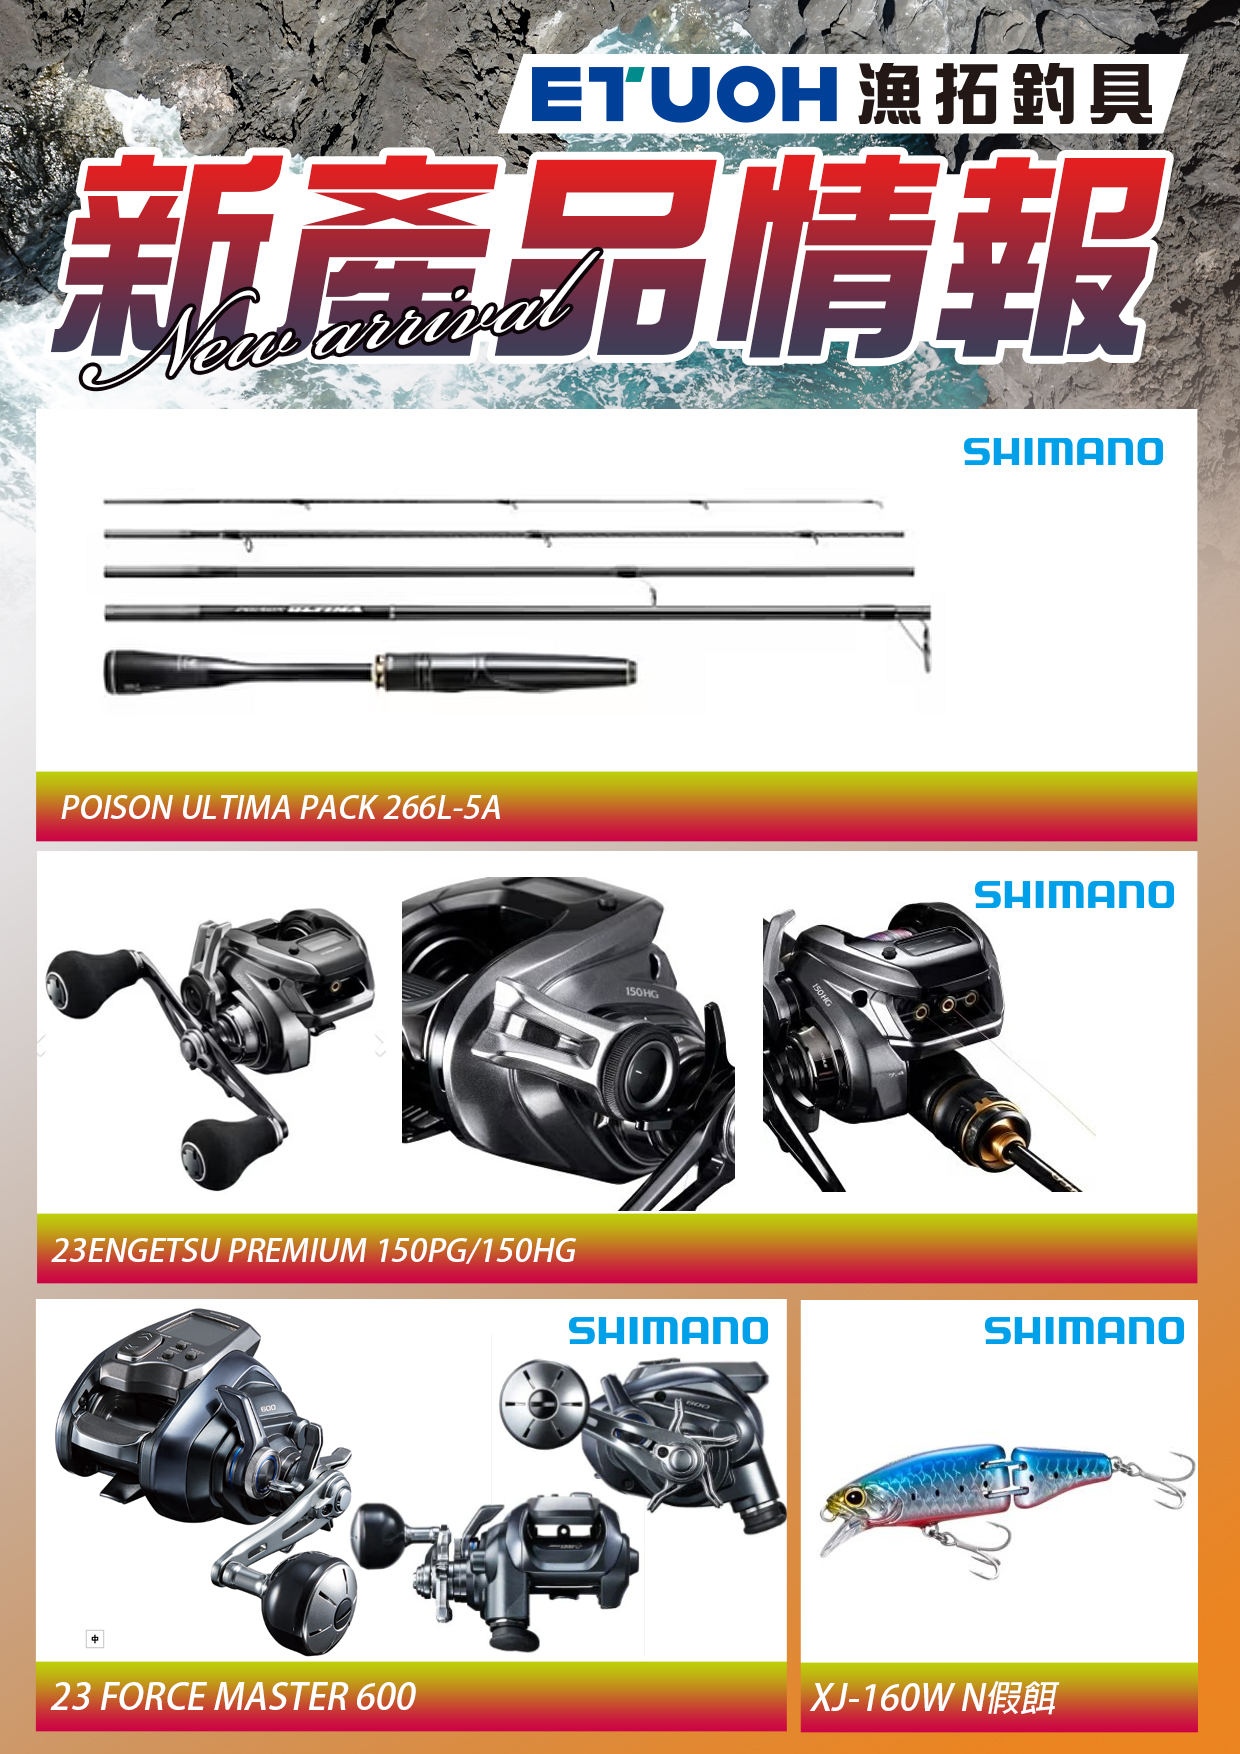 新產品情報SHIMANO